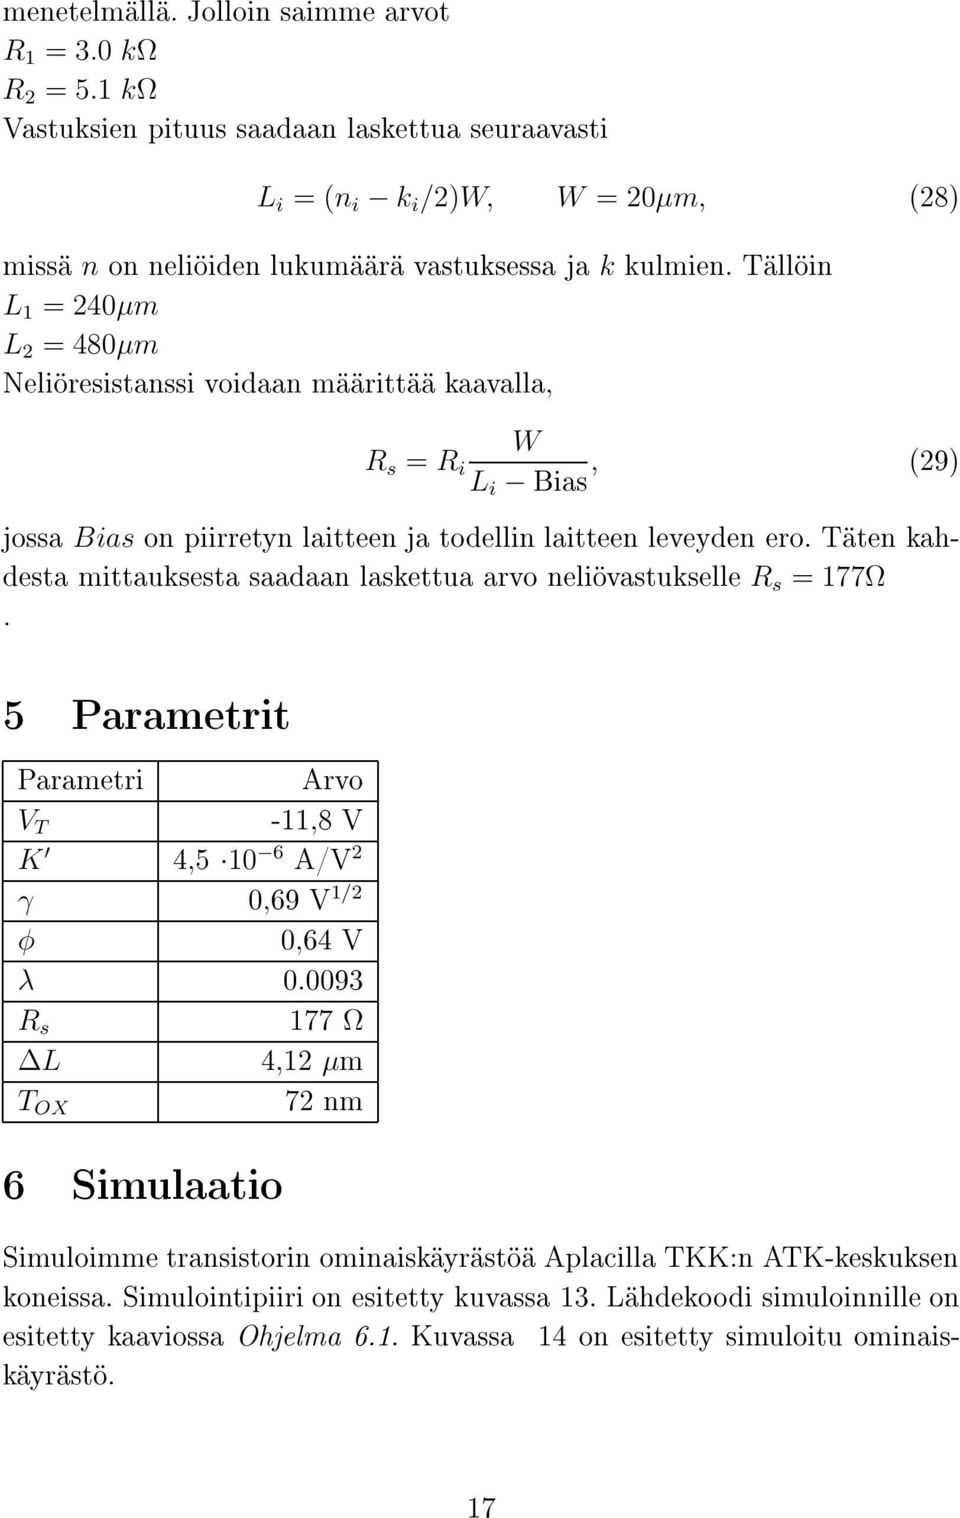 Täten kahdesta mittauksesta saadaan laskettua arvo neliövastukselle R s = 177Ω. 5 Parametrit Parametri Arvo V T -11,8 V K 4,5 10 6 A/V 2 γ 0,69 V 1/2 φ 0,64 V λ 0.